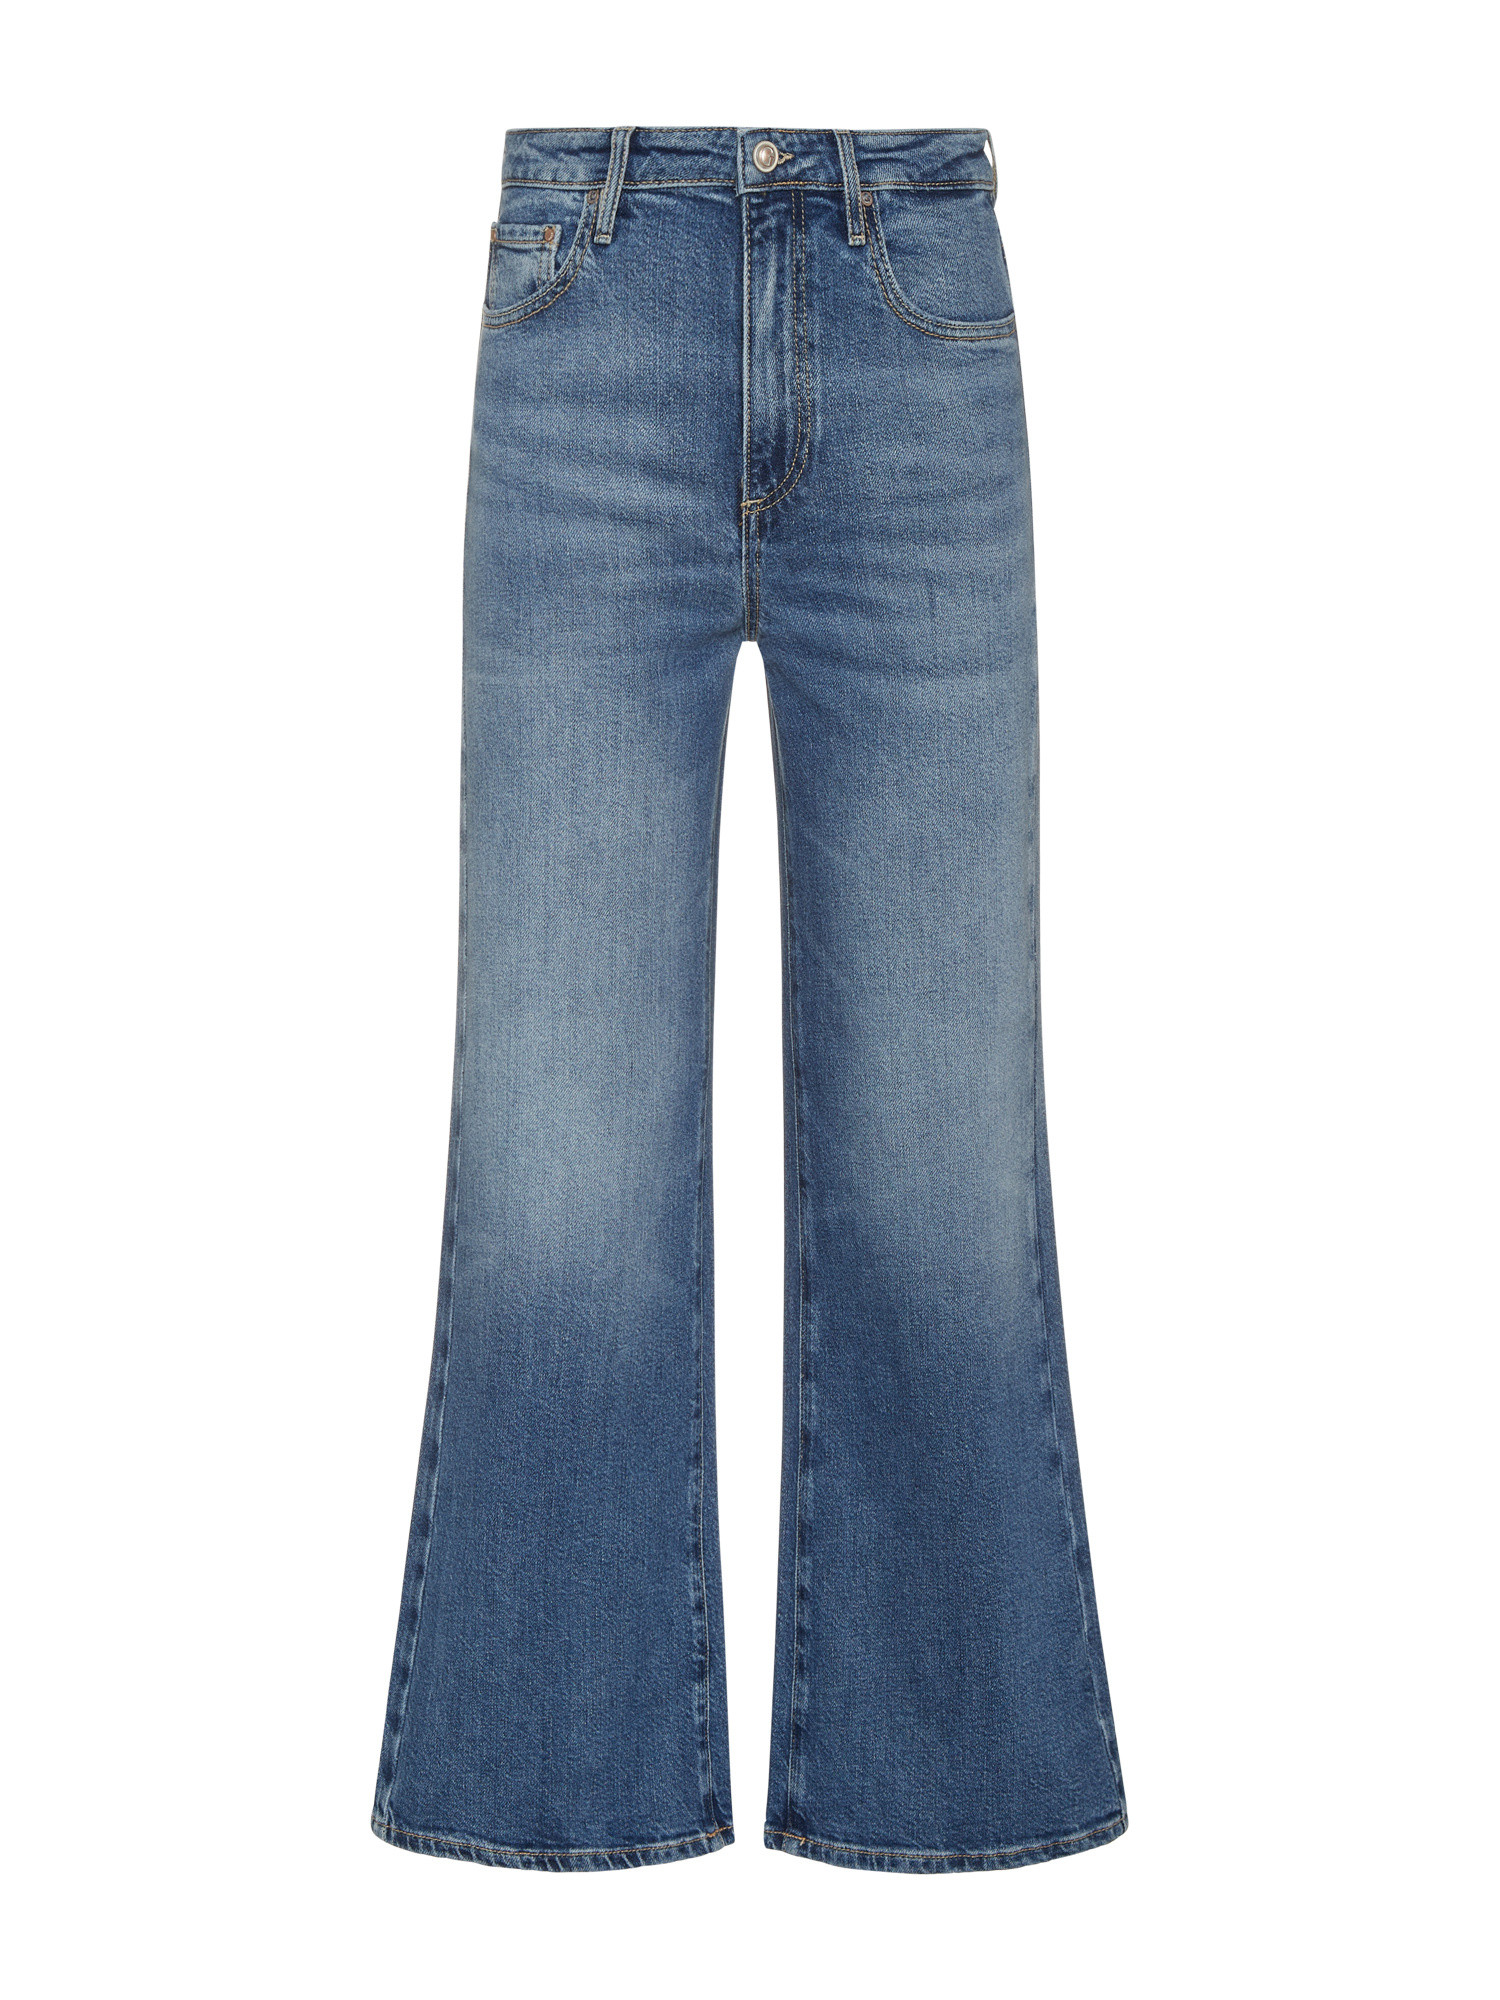 Guess - Five pocket wide leg jeans, Denim, large image number 0